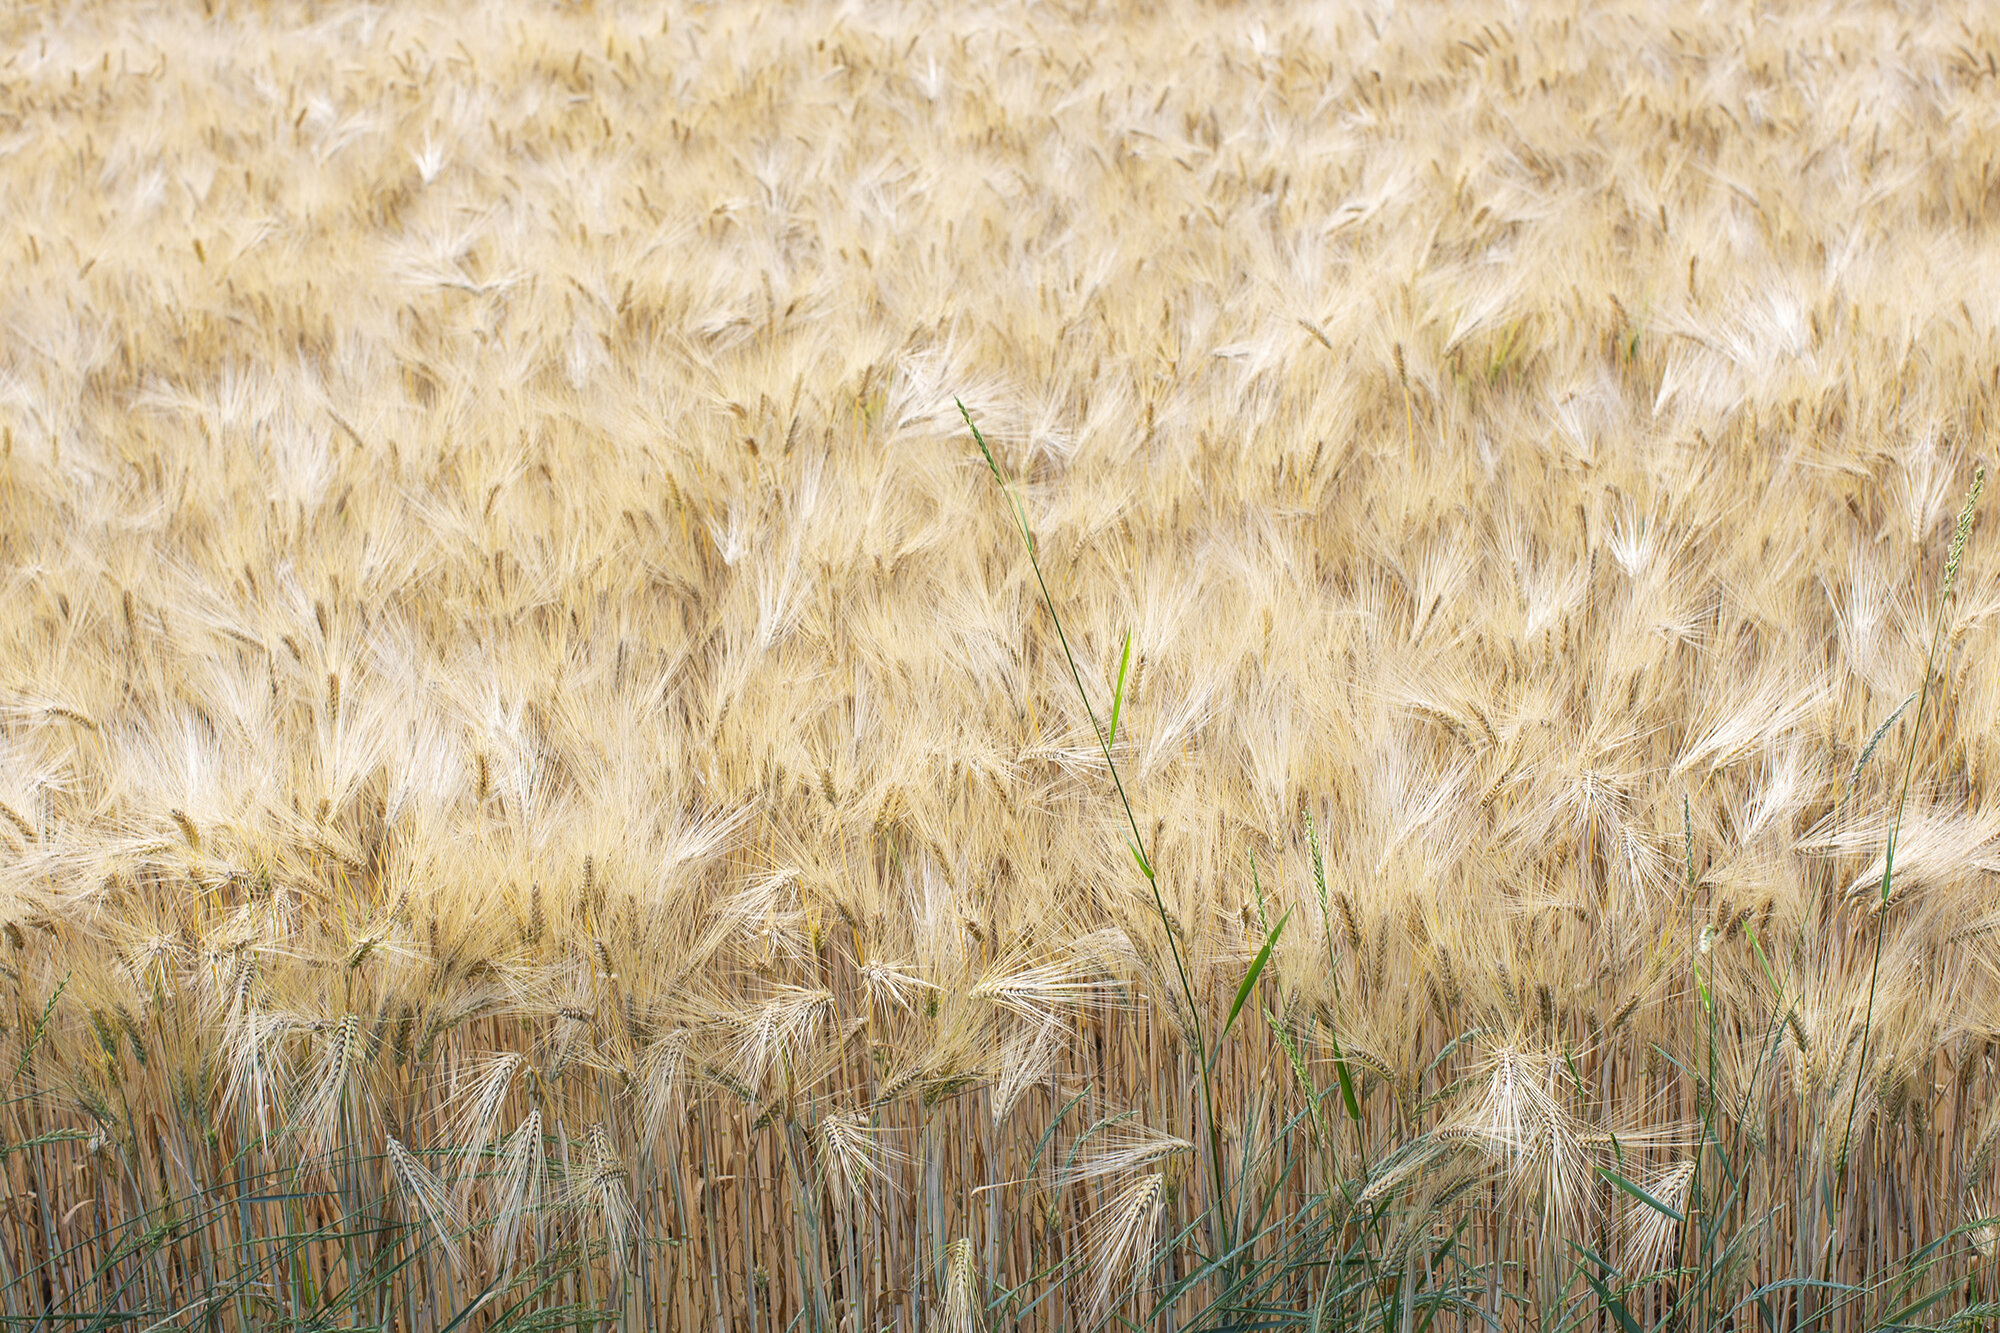 wheat field.jpg